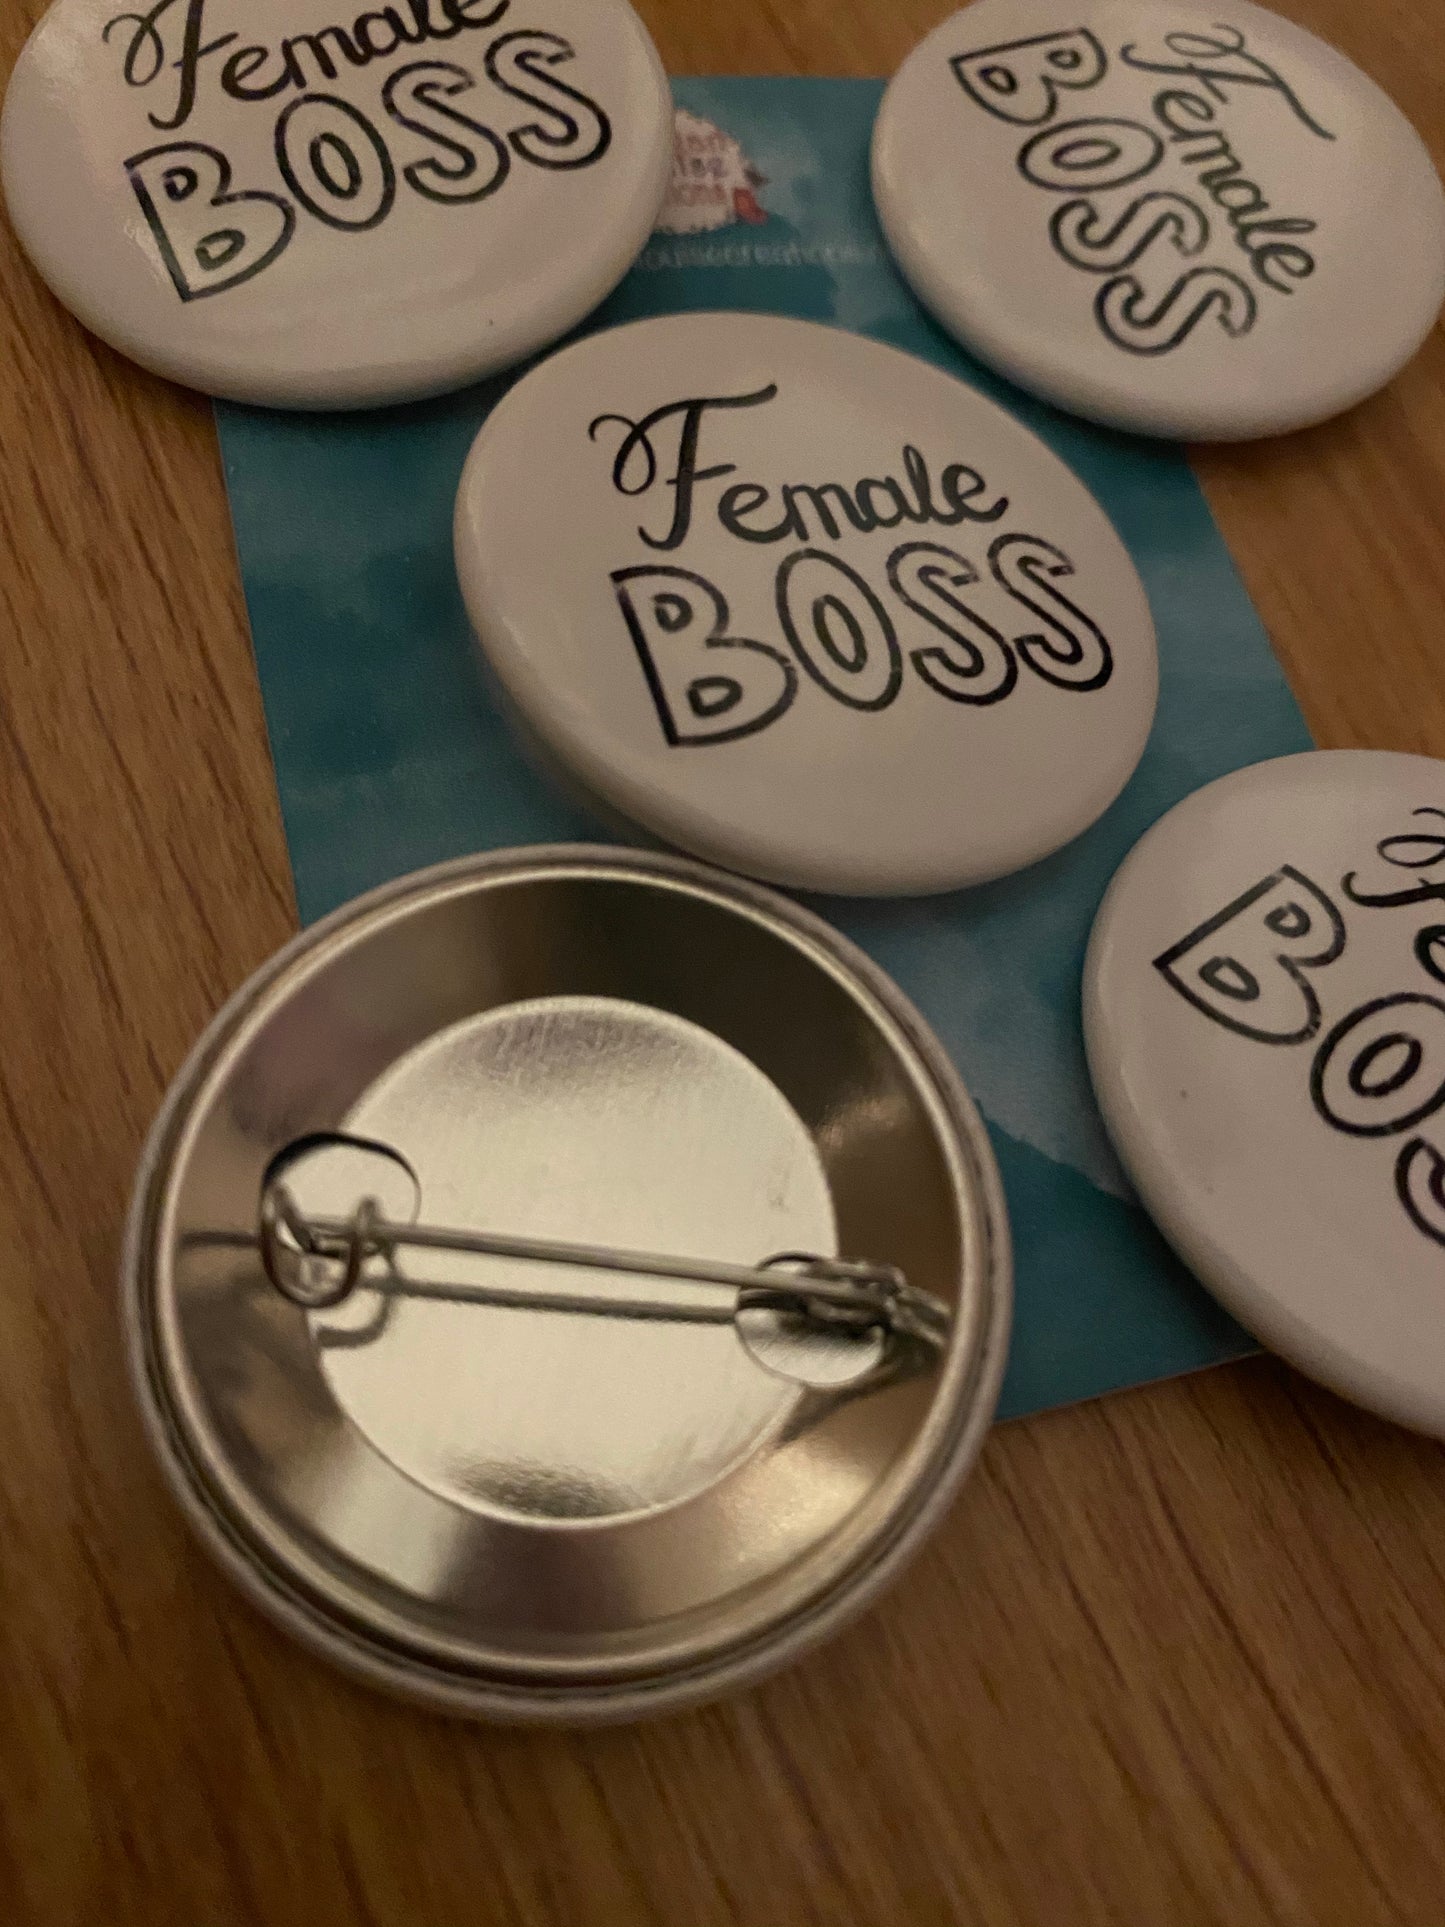 Female boss pin badge